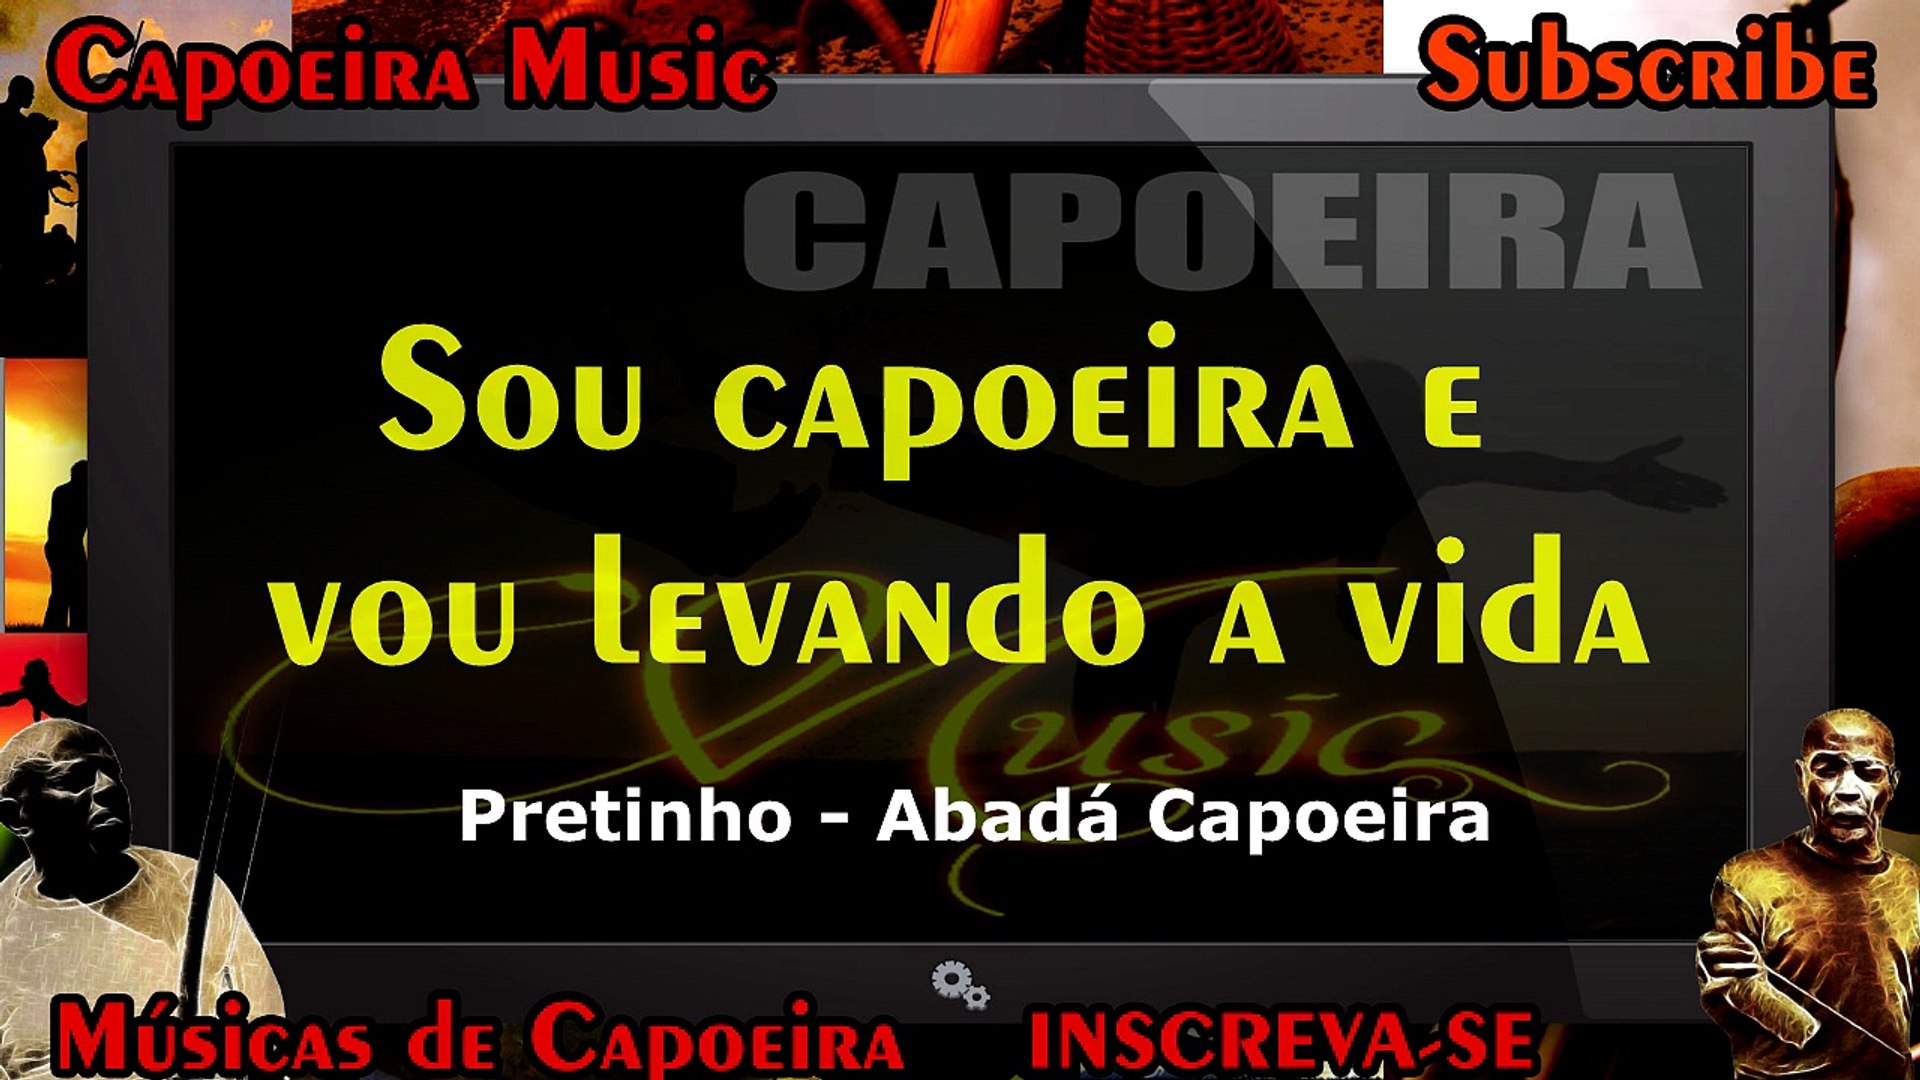 Sou capoeira e vou levando a vida, Pretinho - Capoeira Music